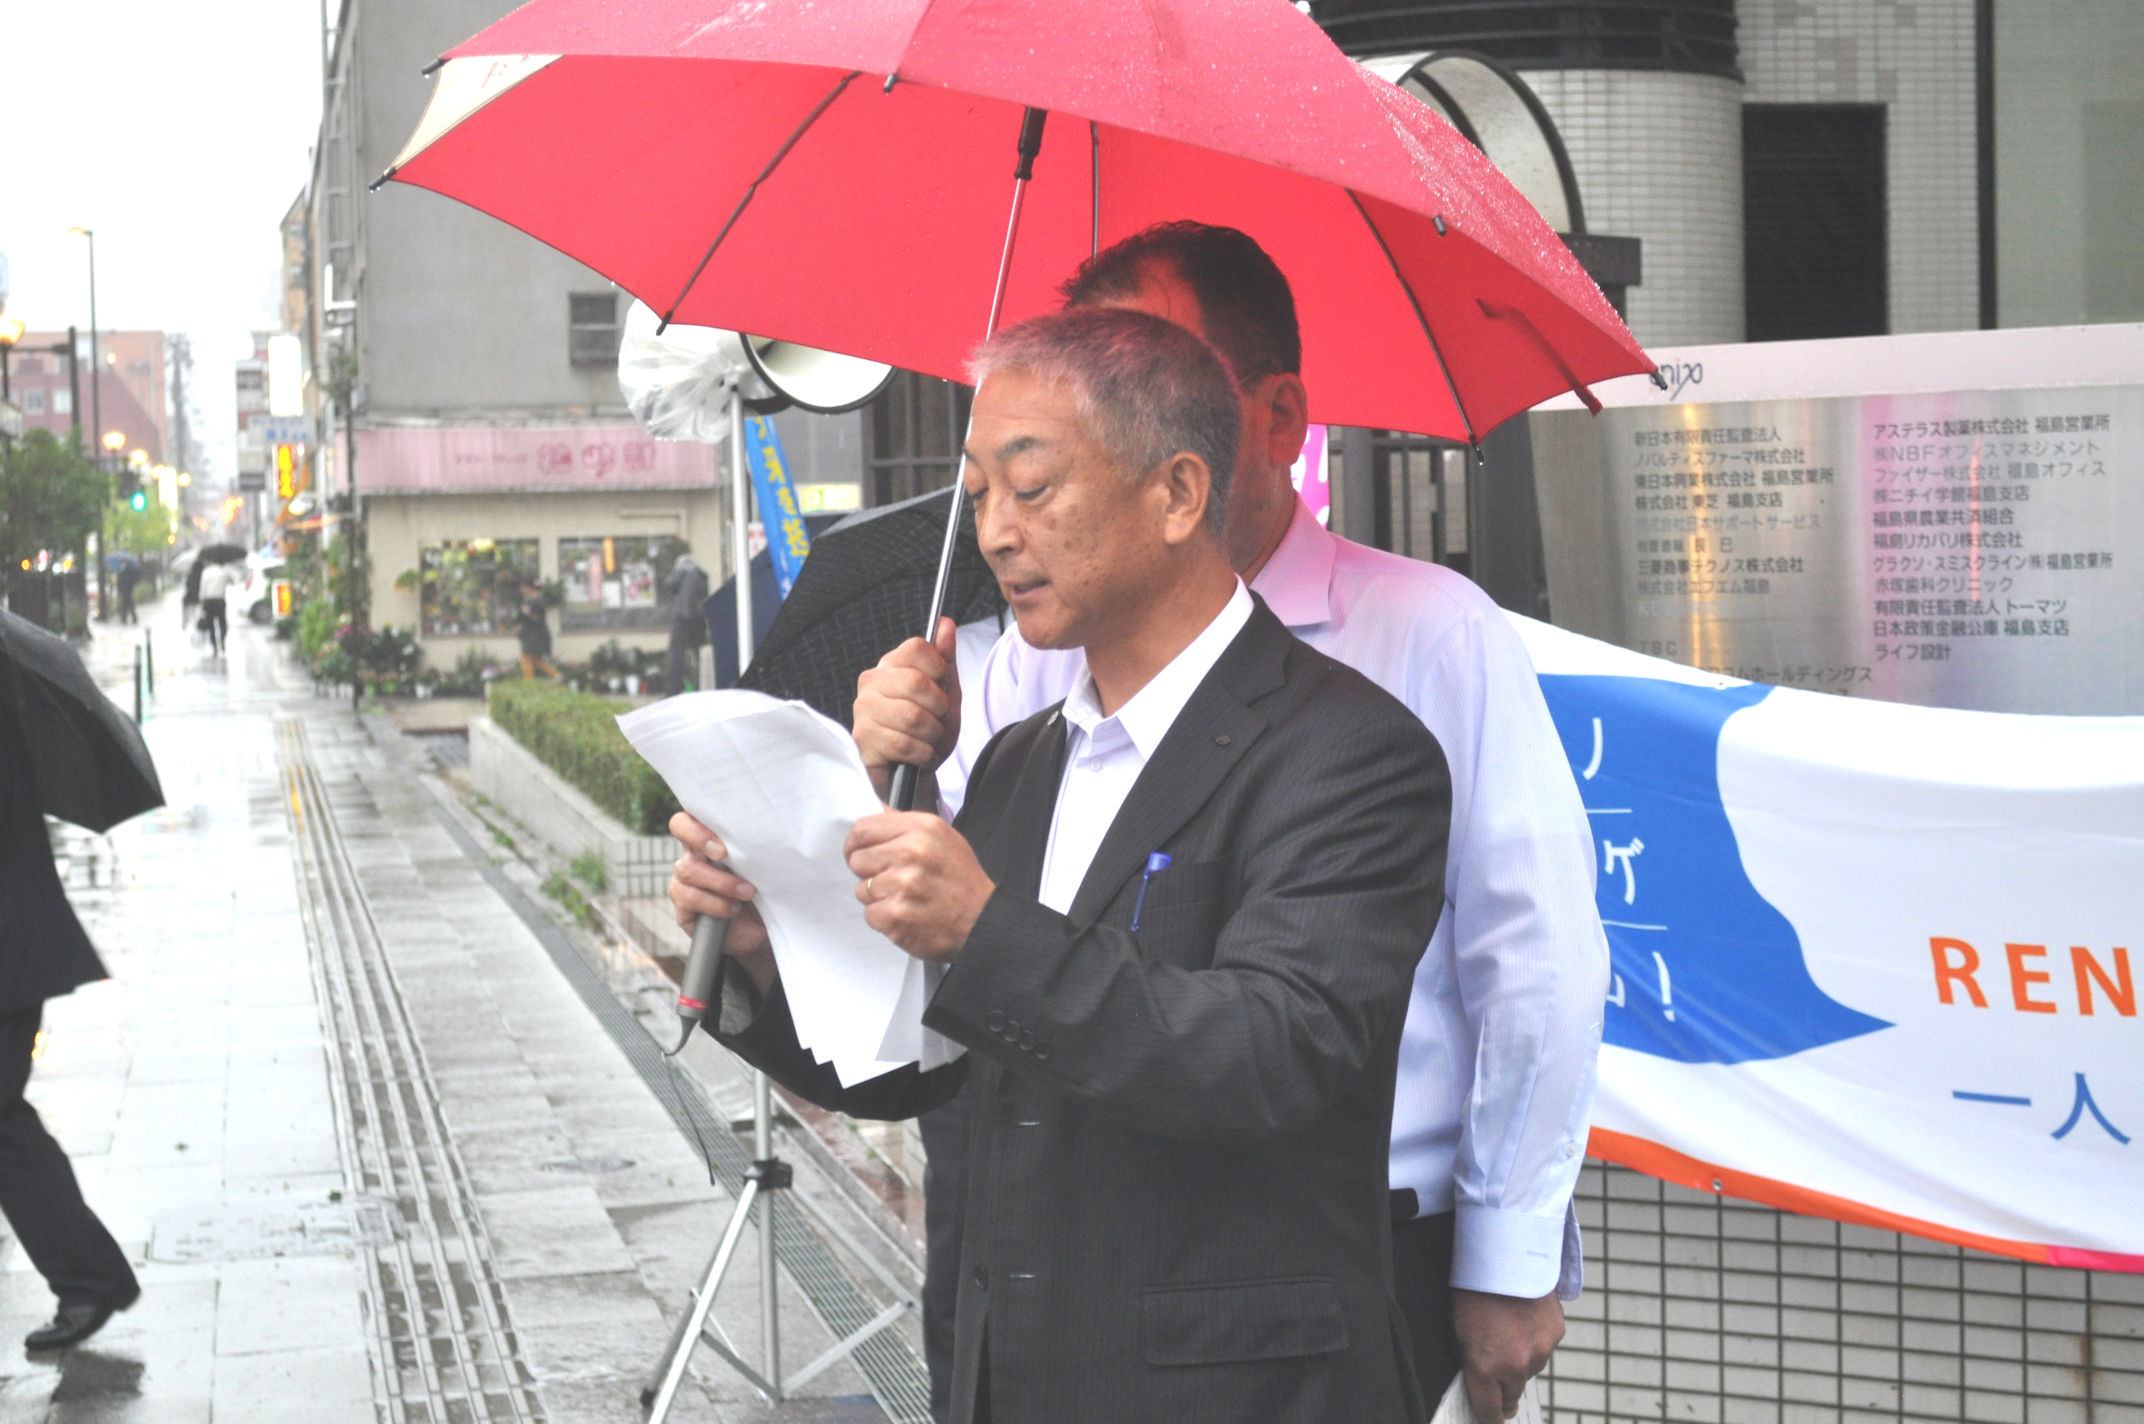 労働問題による相談を呼びかける連合福島遠藤章副会長